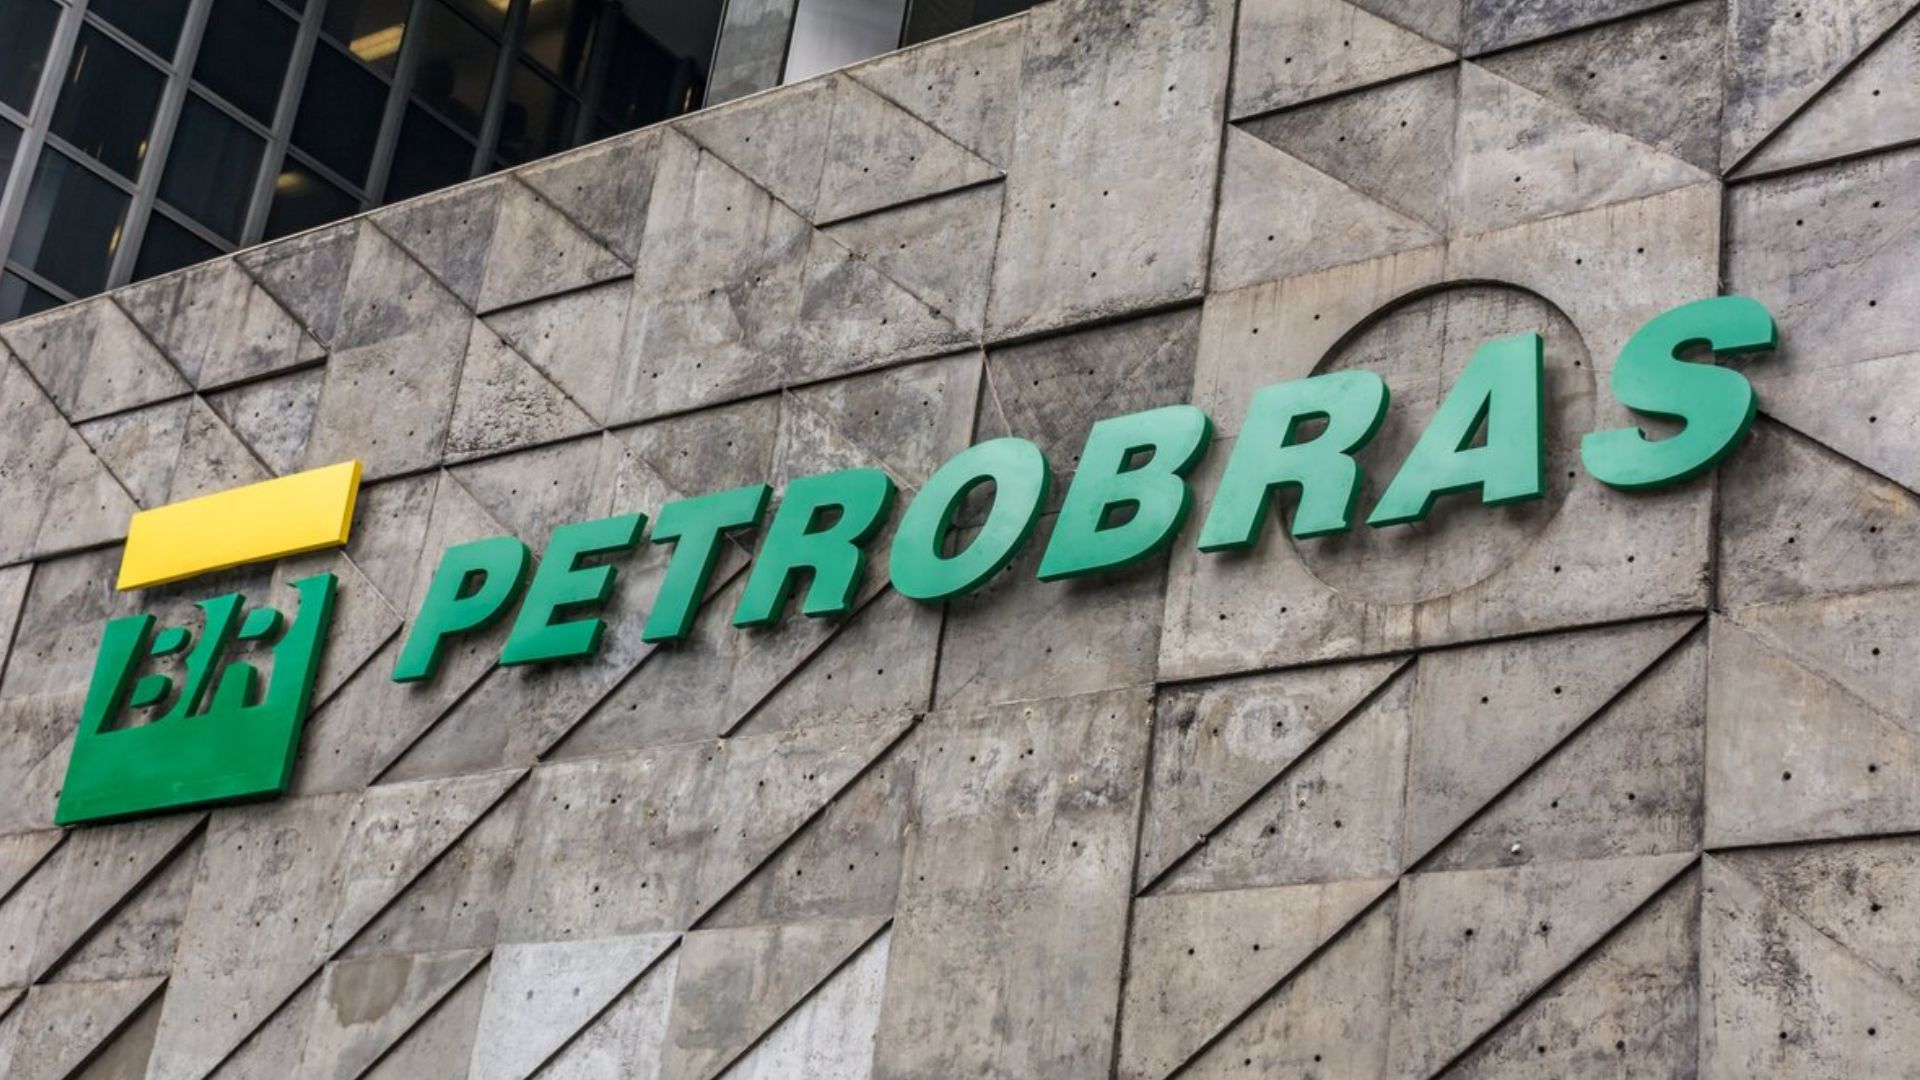 Petrobras reduz preço do diesel e da gasolina para as distribuidoras